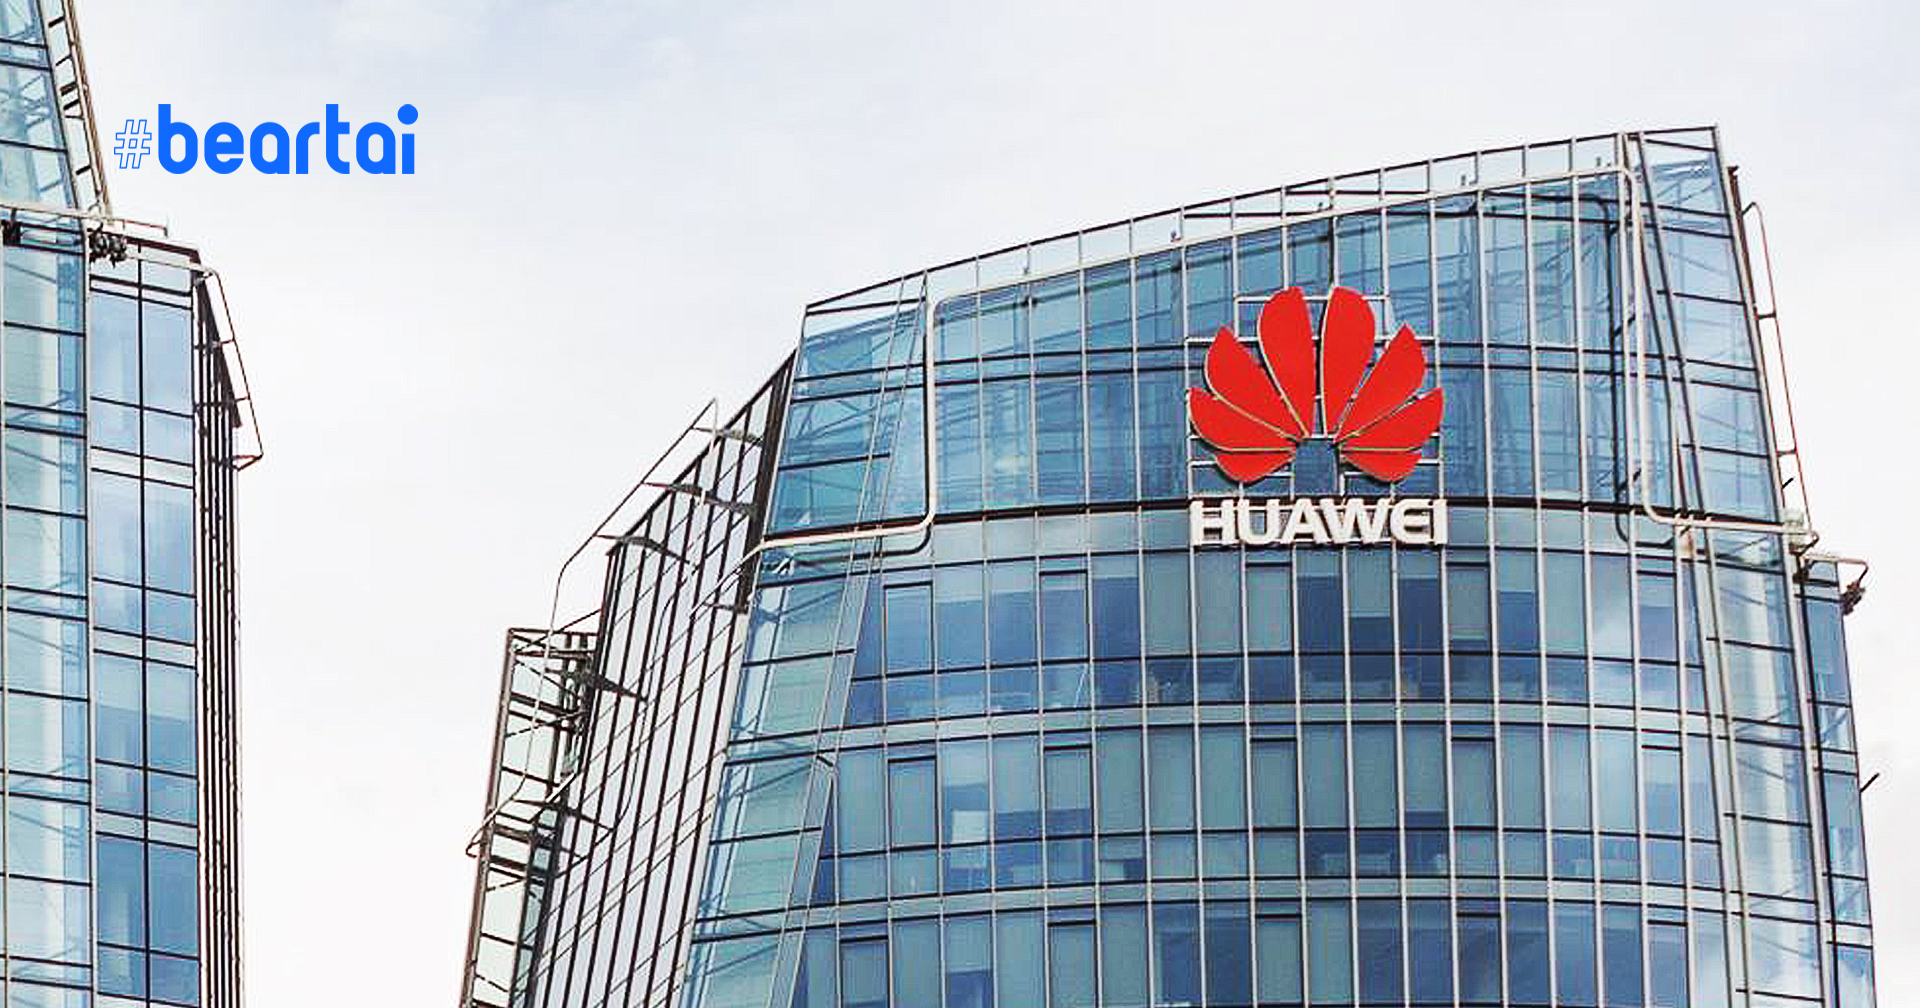 สหราชอาณาจักรตั้งข้อกล่าวหาว่า Huawei ร่วมมือกับรัฐบาลจีน